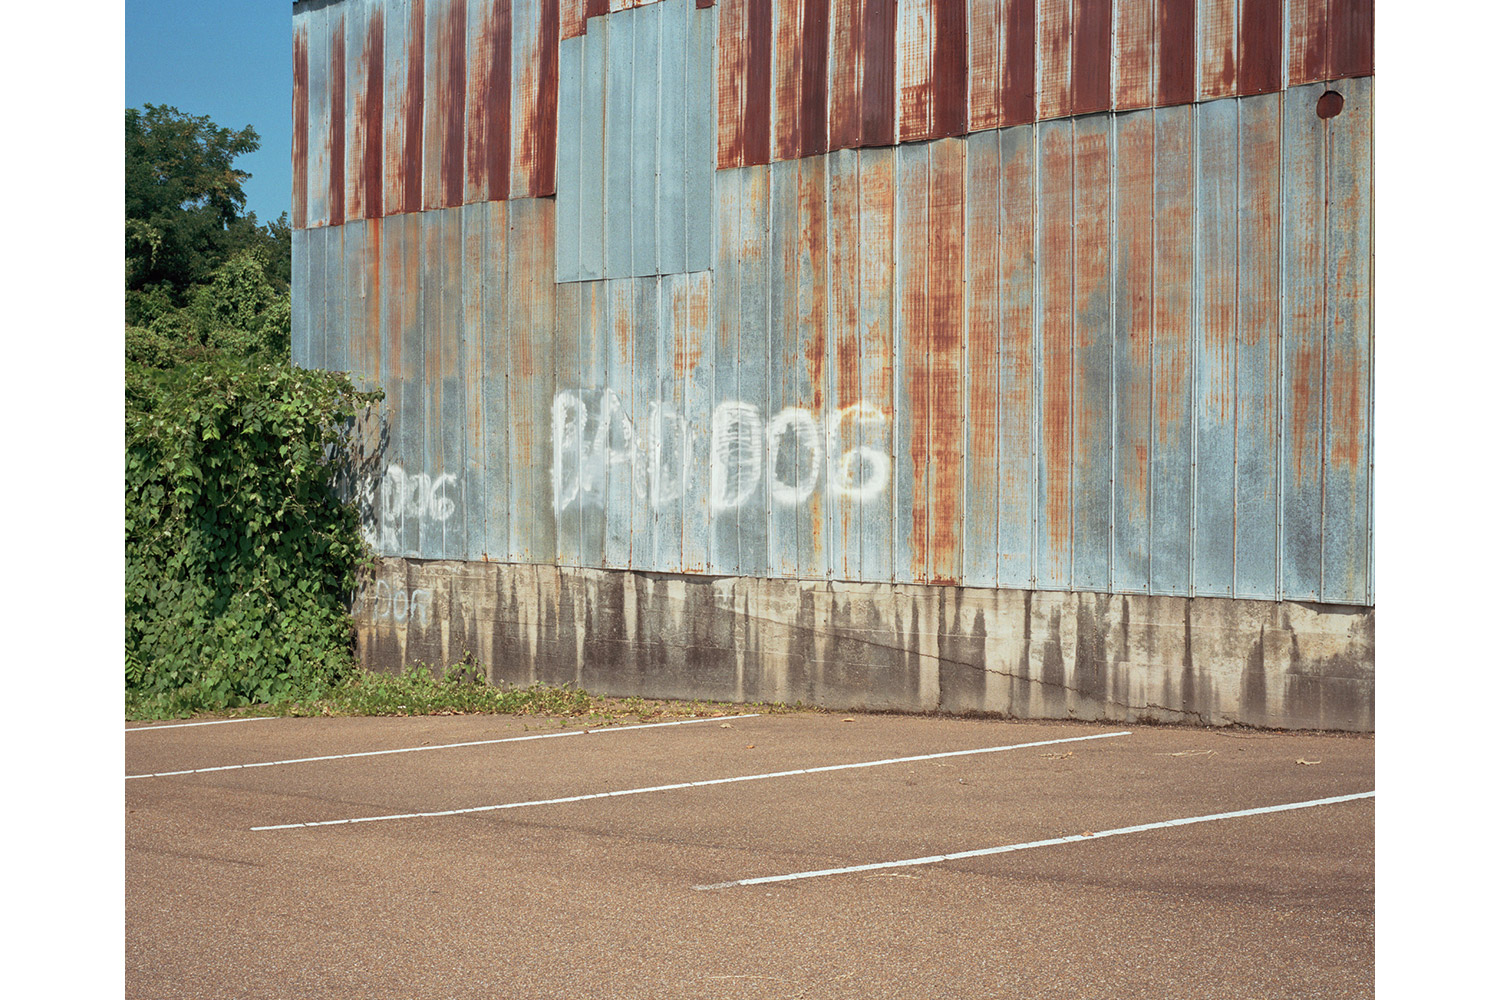 Bad Dog, 2010